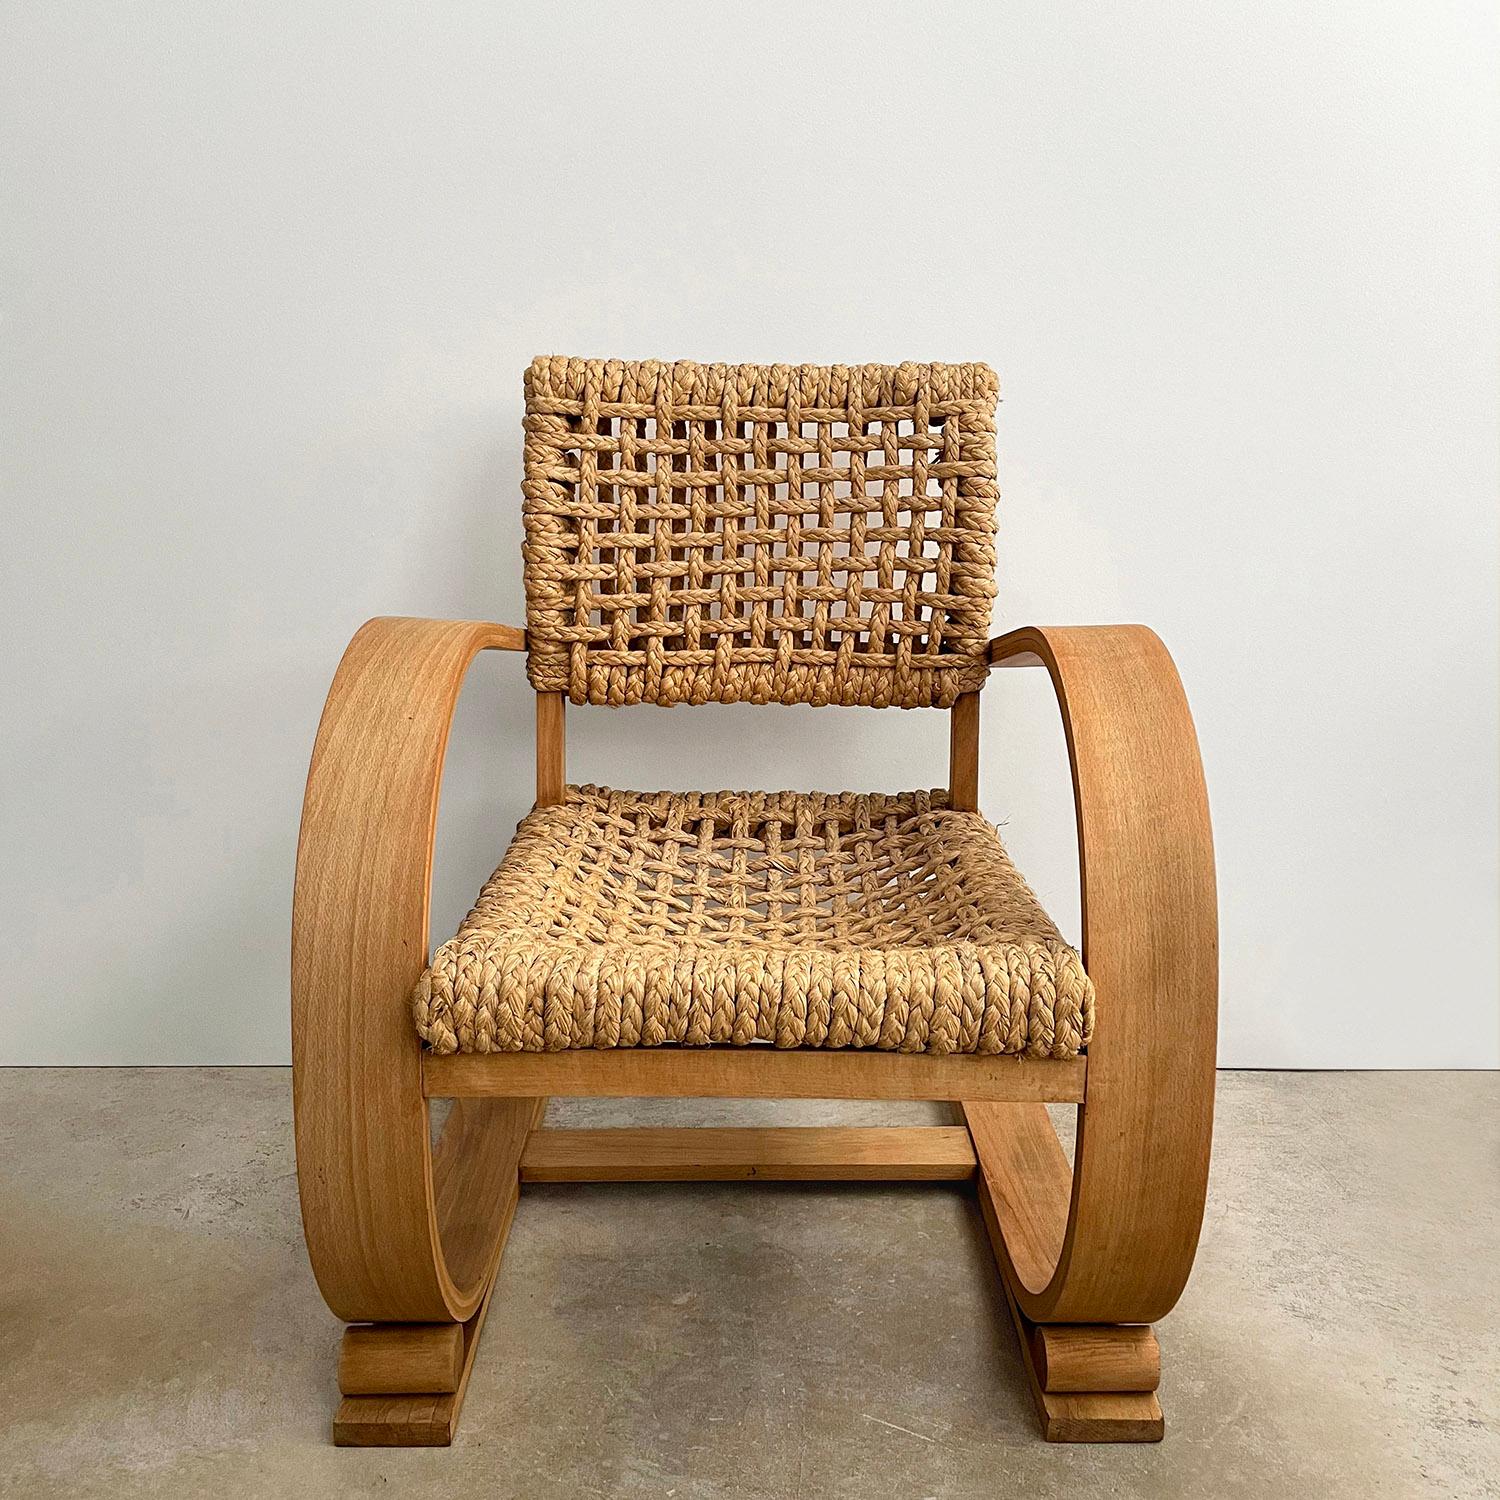 Adrien Audoux & Frida Minet Freischwingende Bugholz-Lounge-Stühle
Frankreich, ca. 1950er Jahre
Hergestellt von Vibo Vesou
Ikonisches und zeitloses klassisches Design, das mit dem Alter nur noch besser wird
Freitragende Bugholzrahmen mit kunstvoll